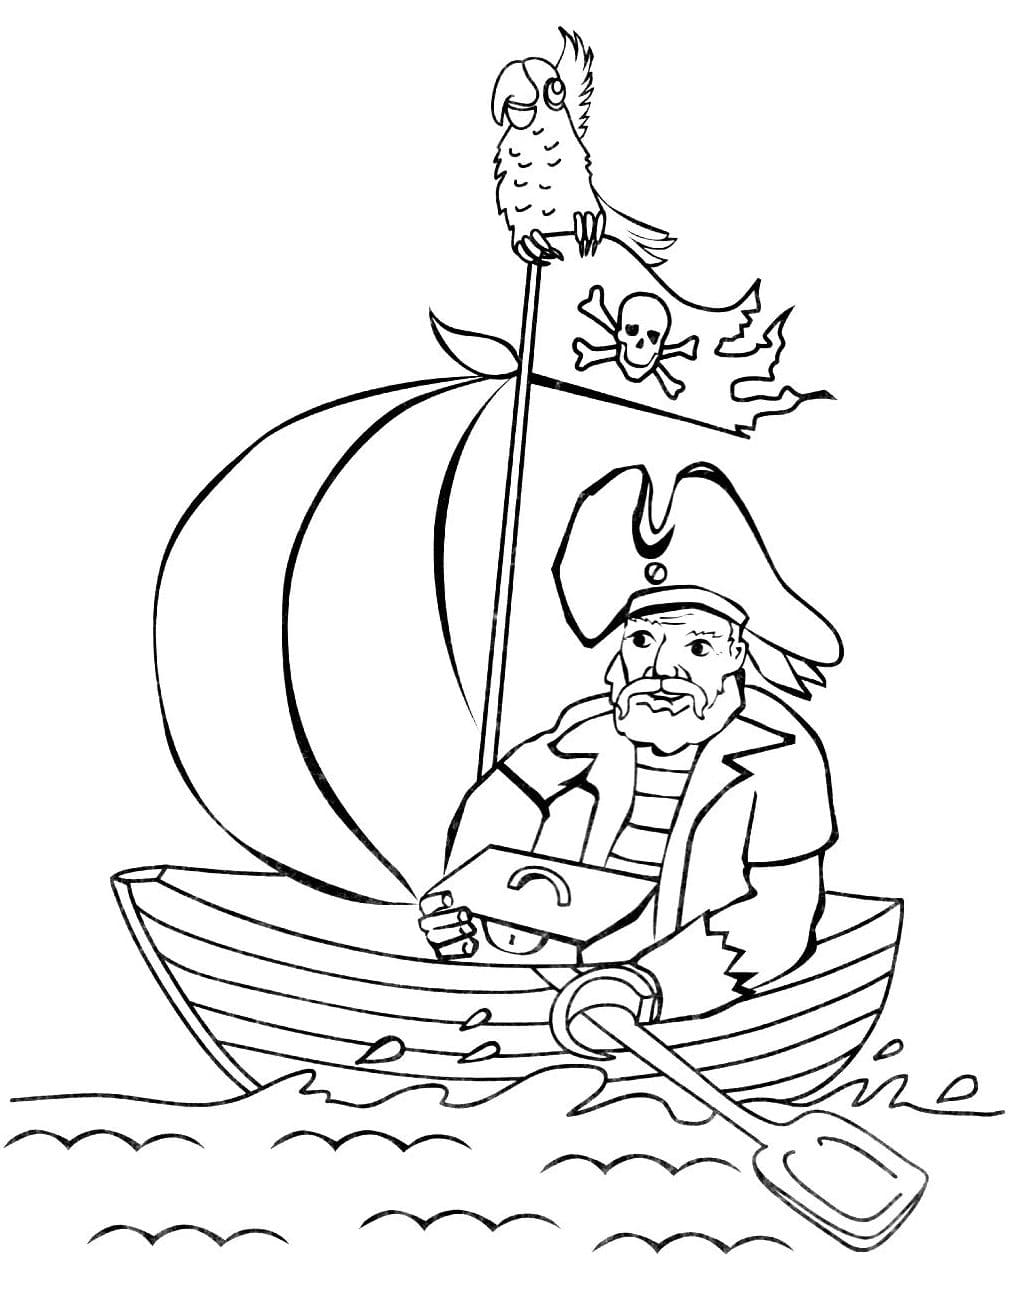 Ausmalbild Piraten Ein Pirat und ein Papagei segeln auf einem Boot